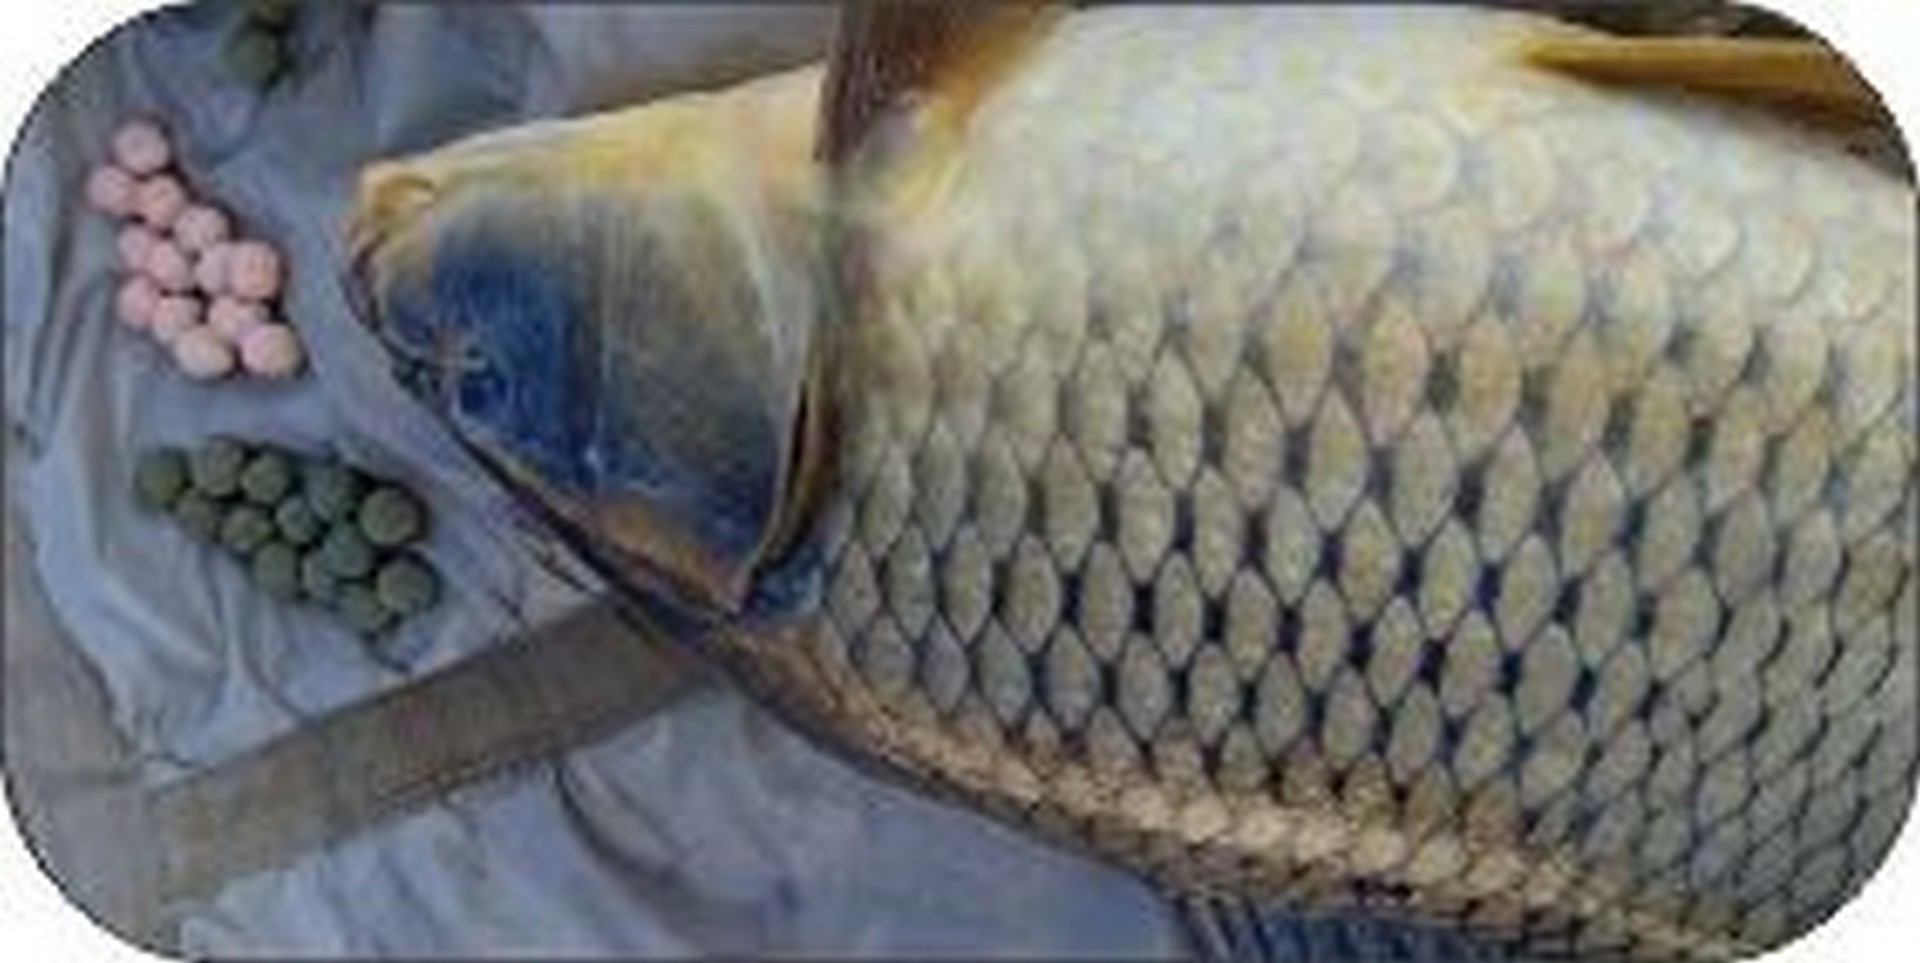 بهترین روش صید ماهی کپور فقط استفاده از طعمه های برند لومینوس میباشد